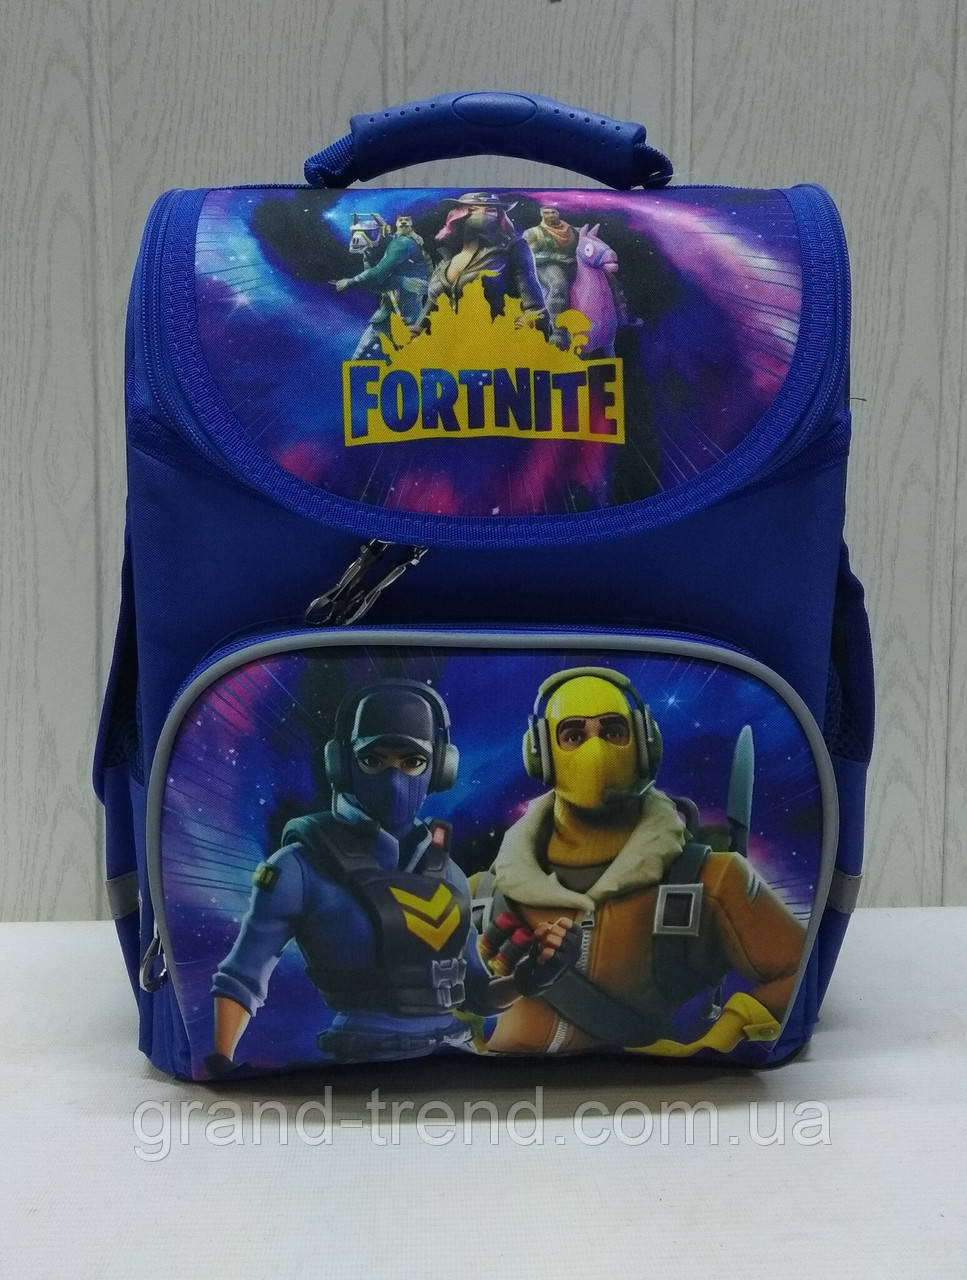 Дитячий шкільний рюкзак для 1-2 класу Fortnite